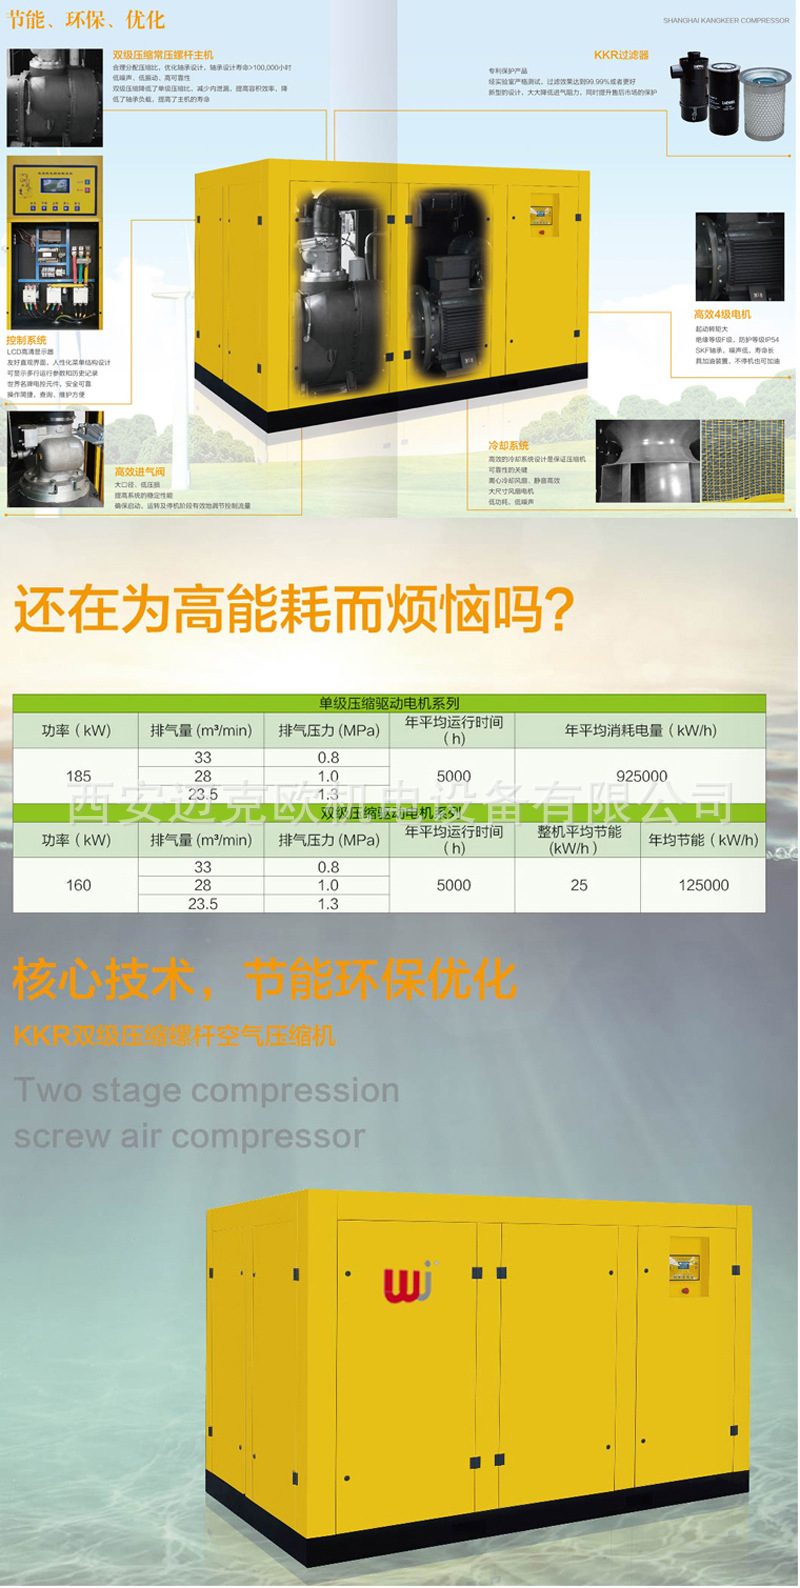 稳健双级永磁变频空压机、VGS-150A 康克尔螺杆空压机维修保养、示例图5